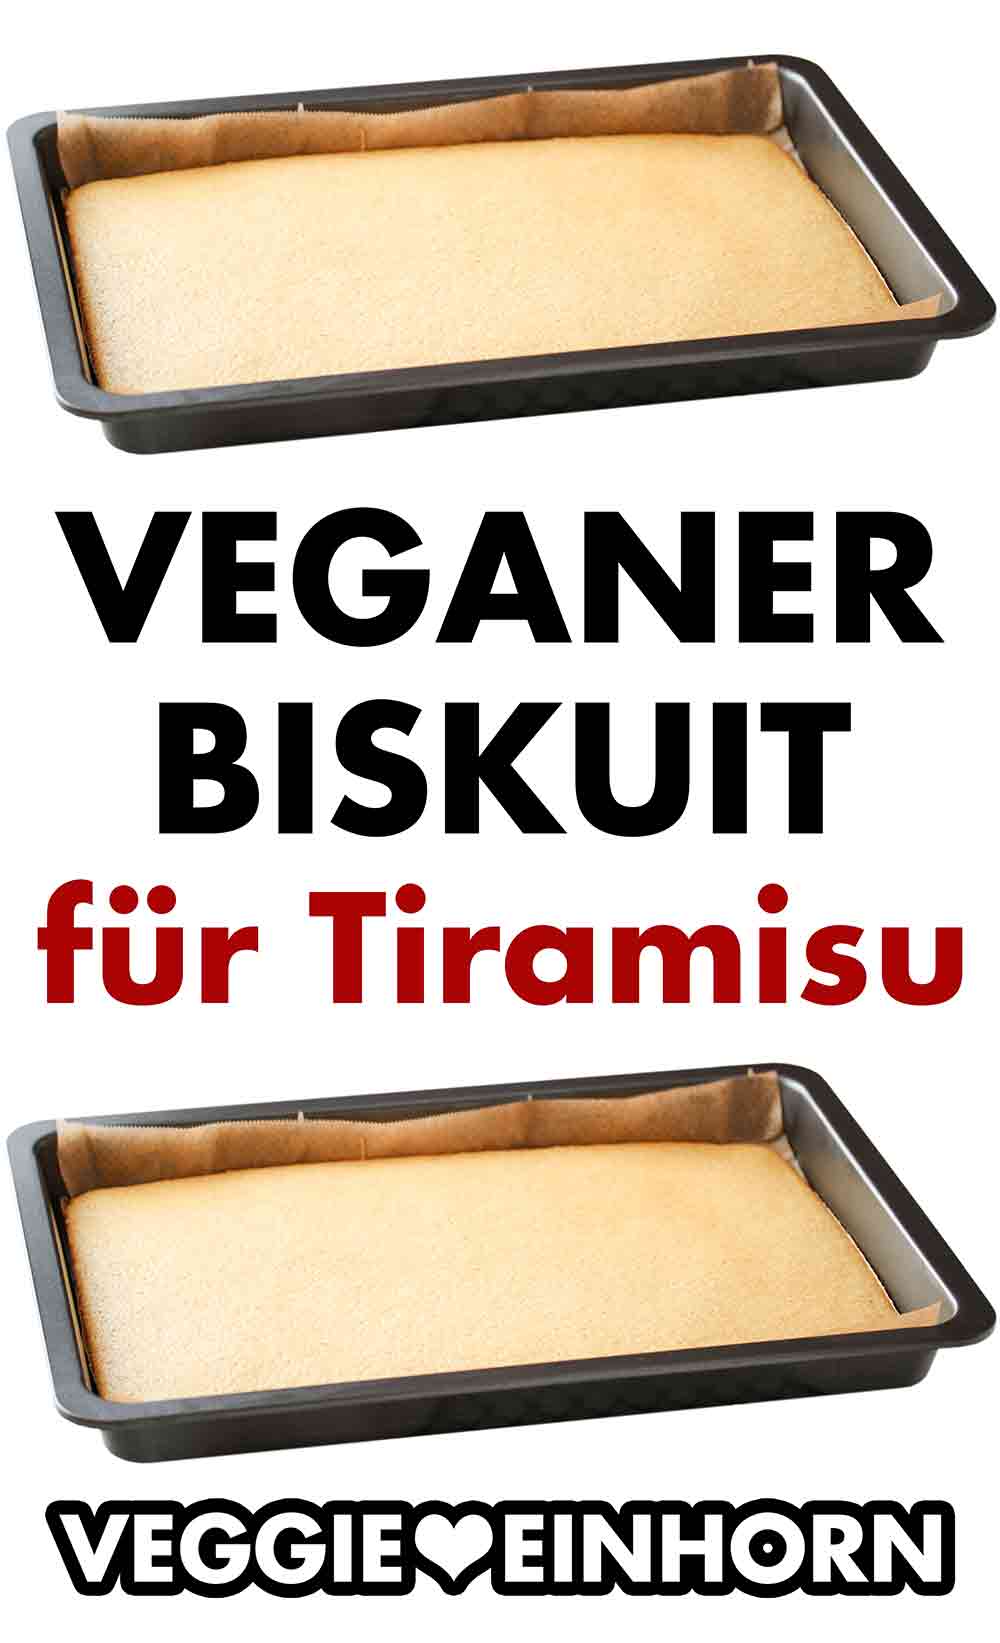 Blech mit veganem Biskuit für Tiramisu